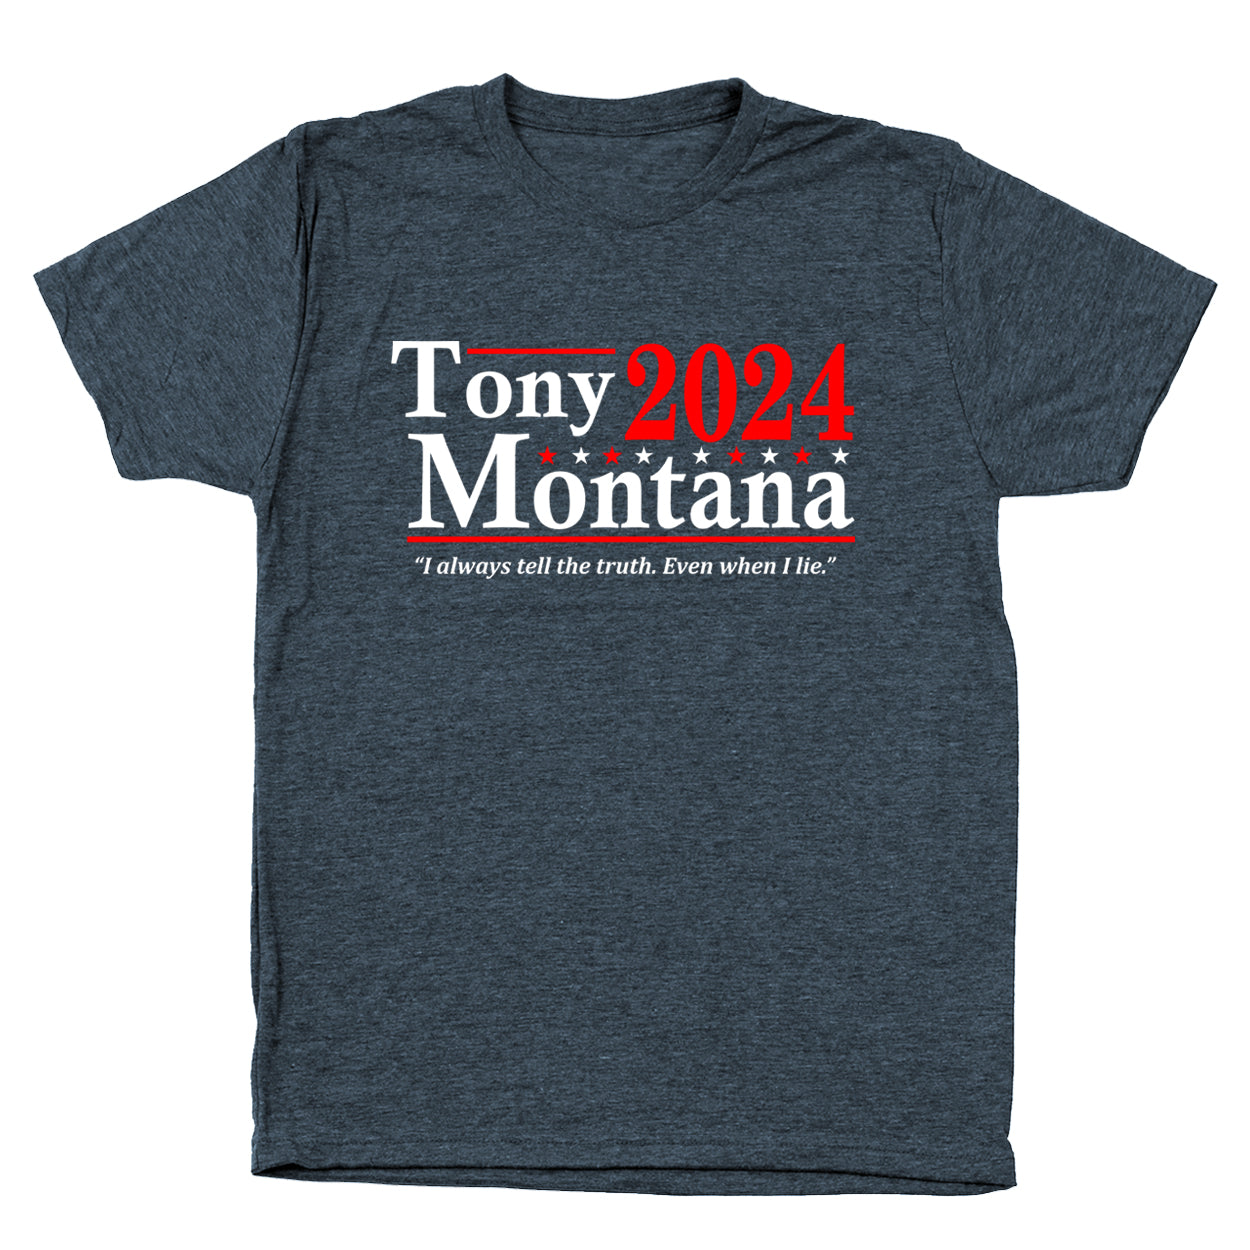 Tony Montana 2024 Election